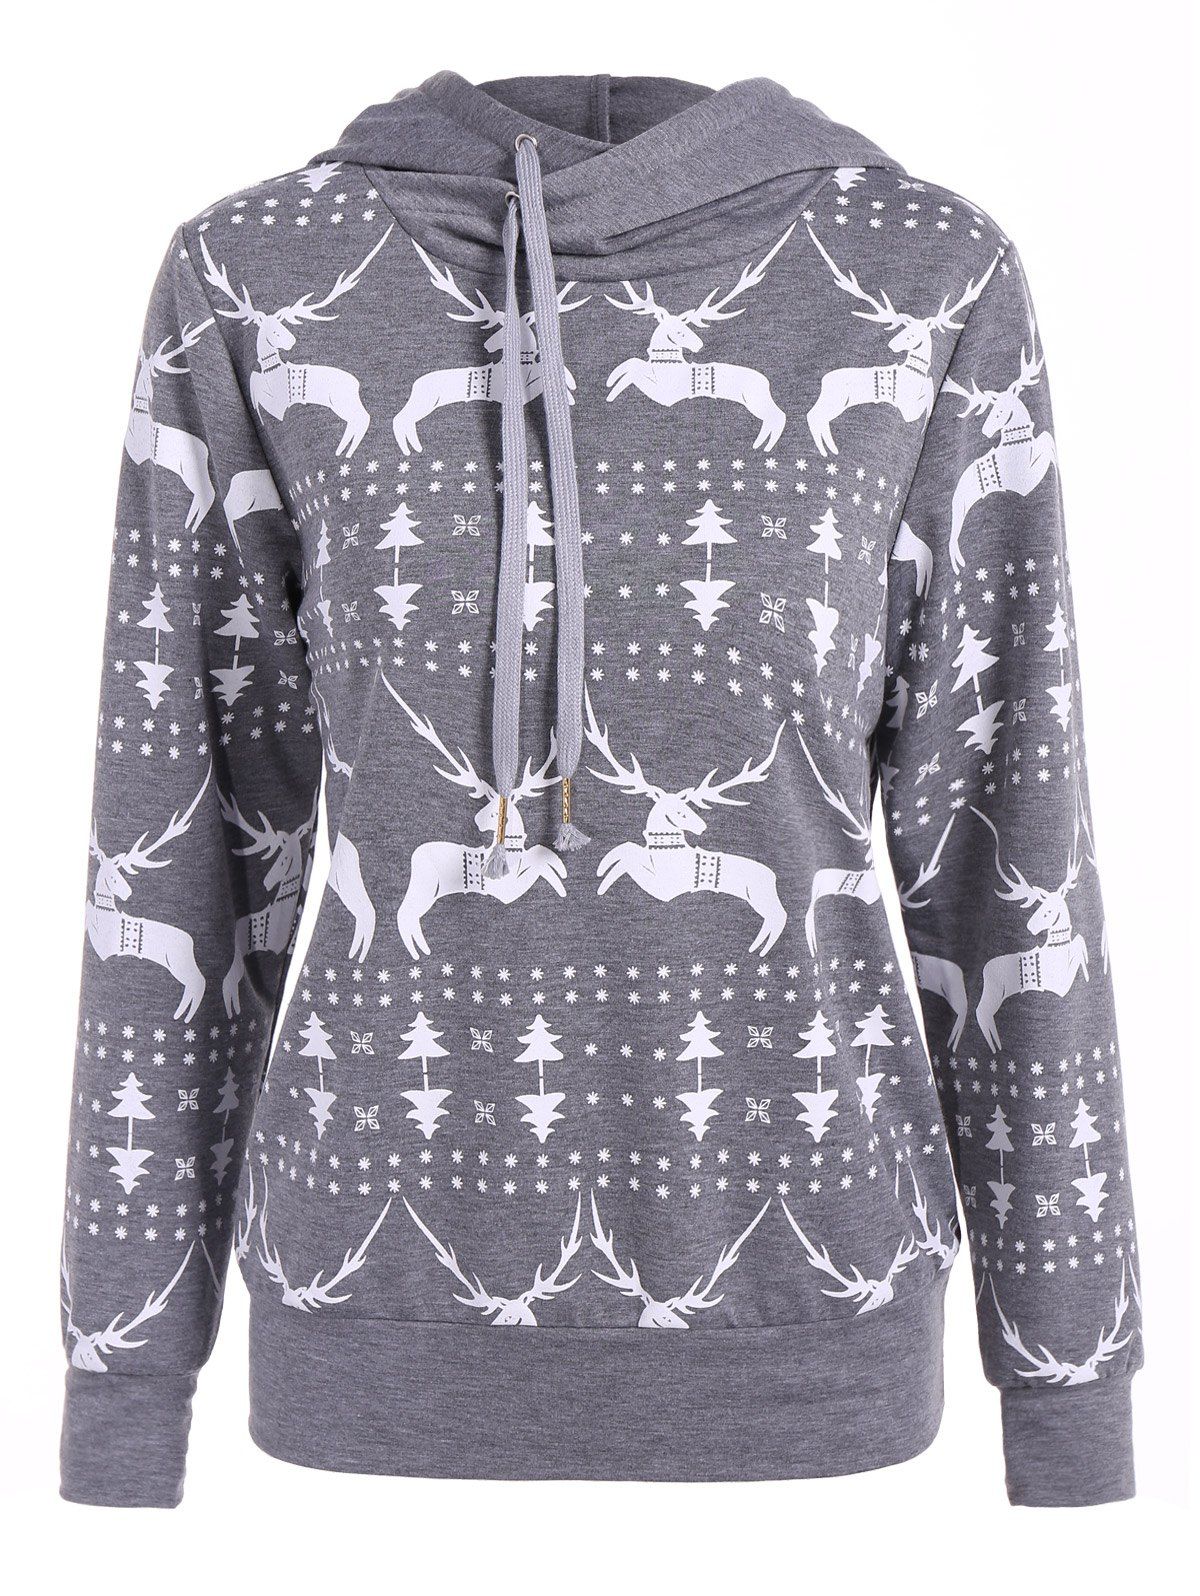 Long Sleeve Elk Print Christmas Pullover Hoodie - GRAY XL